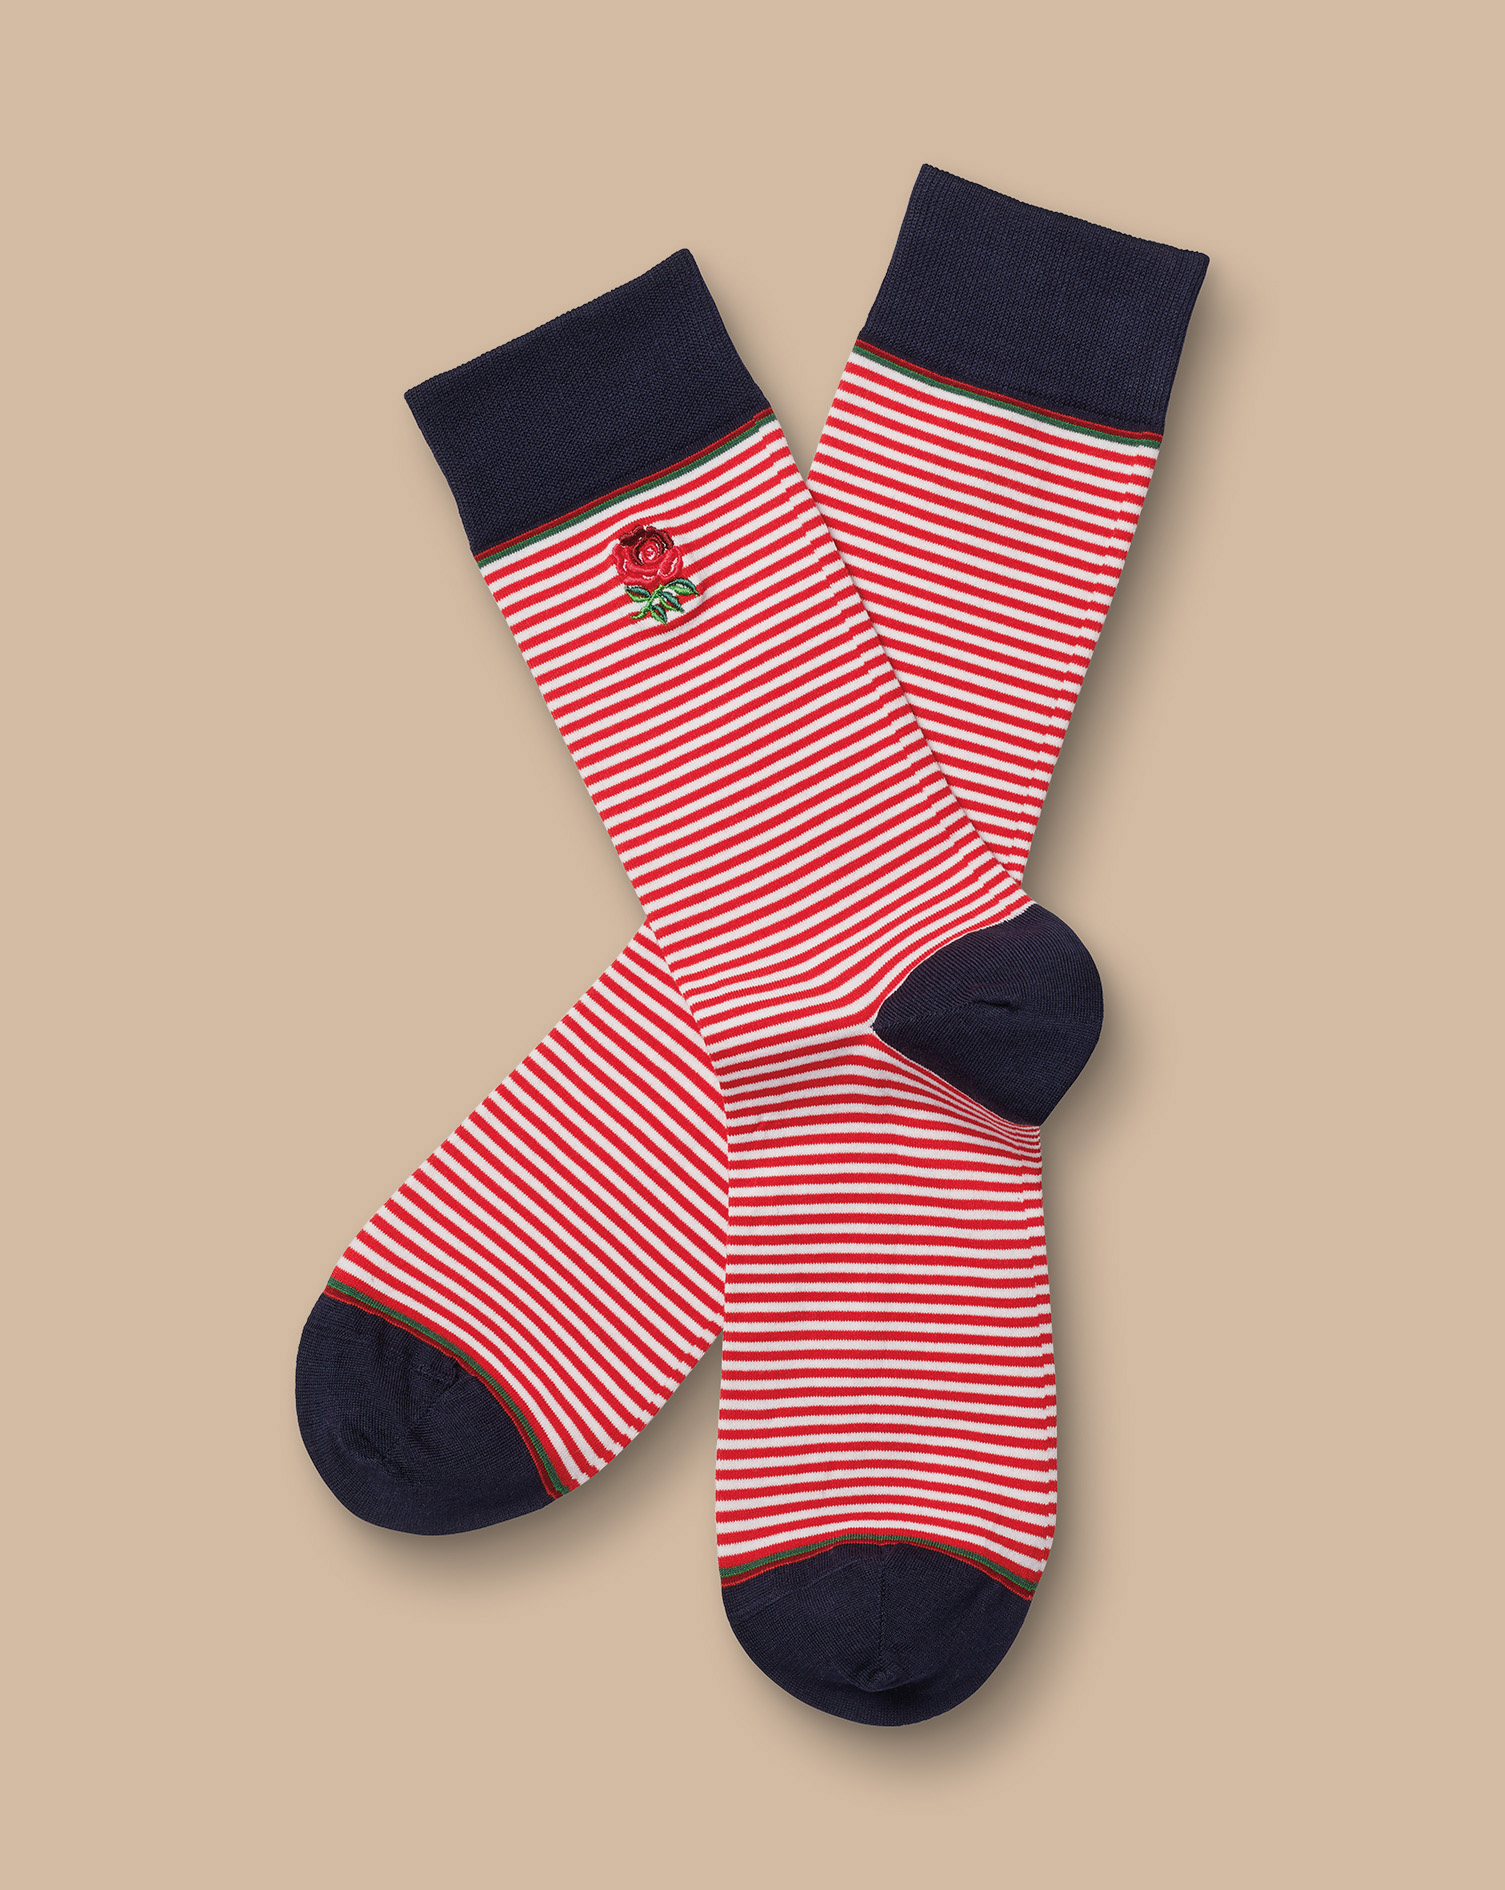 Men's Charles Tyrwhitt England Rugby Fine Stripe Socks - Red & White Size Medium Cotton
